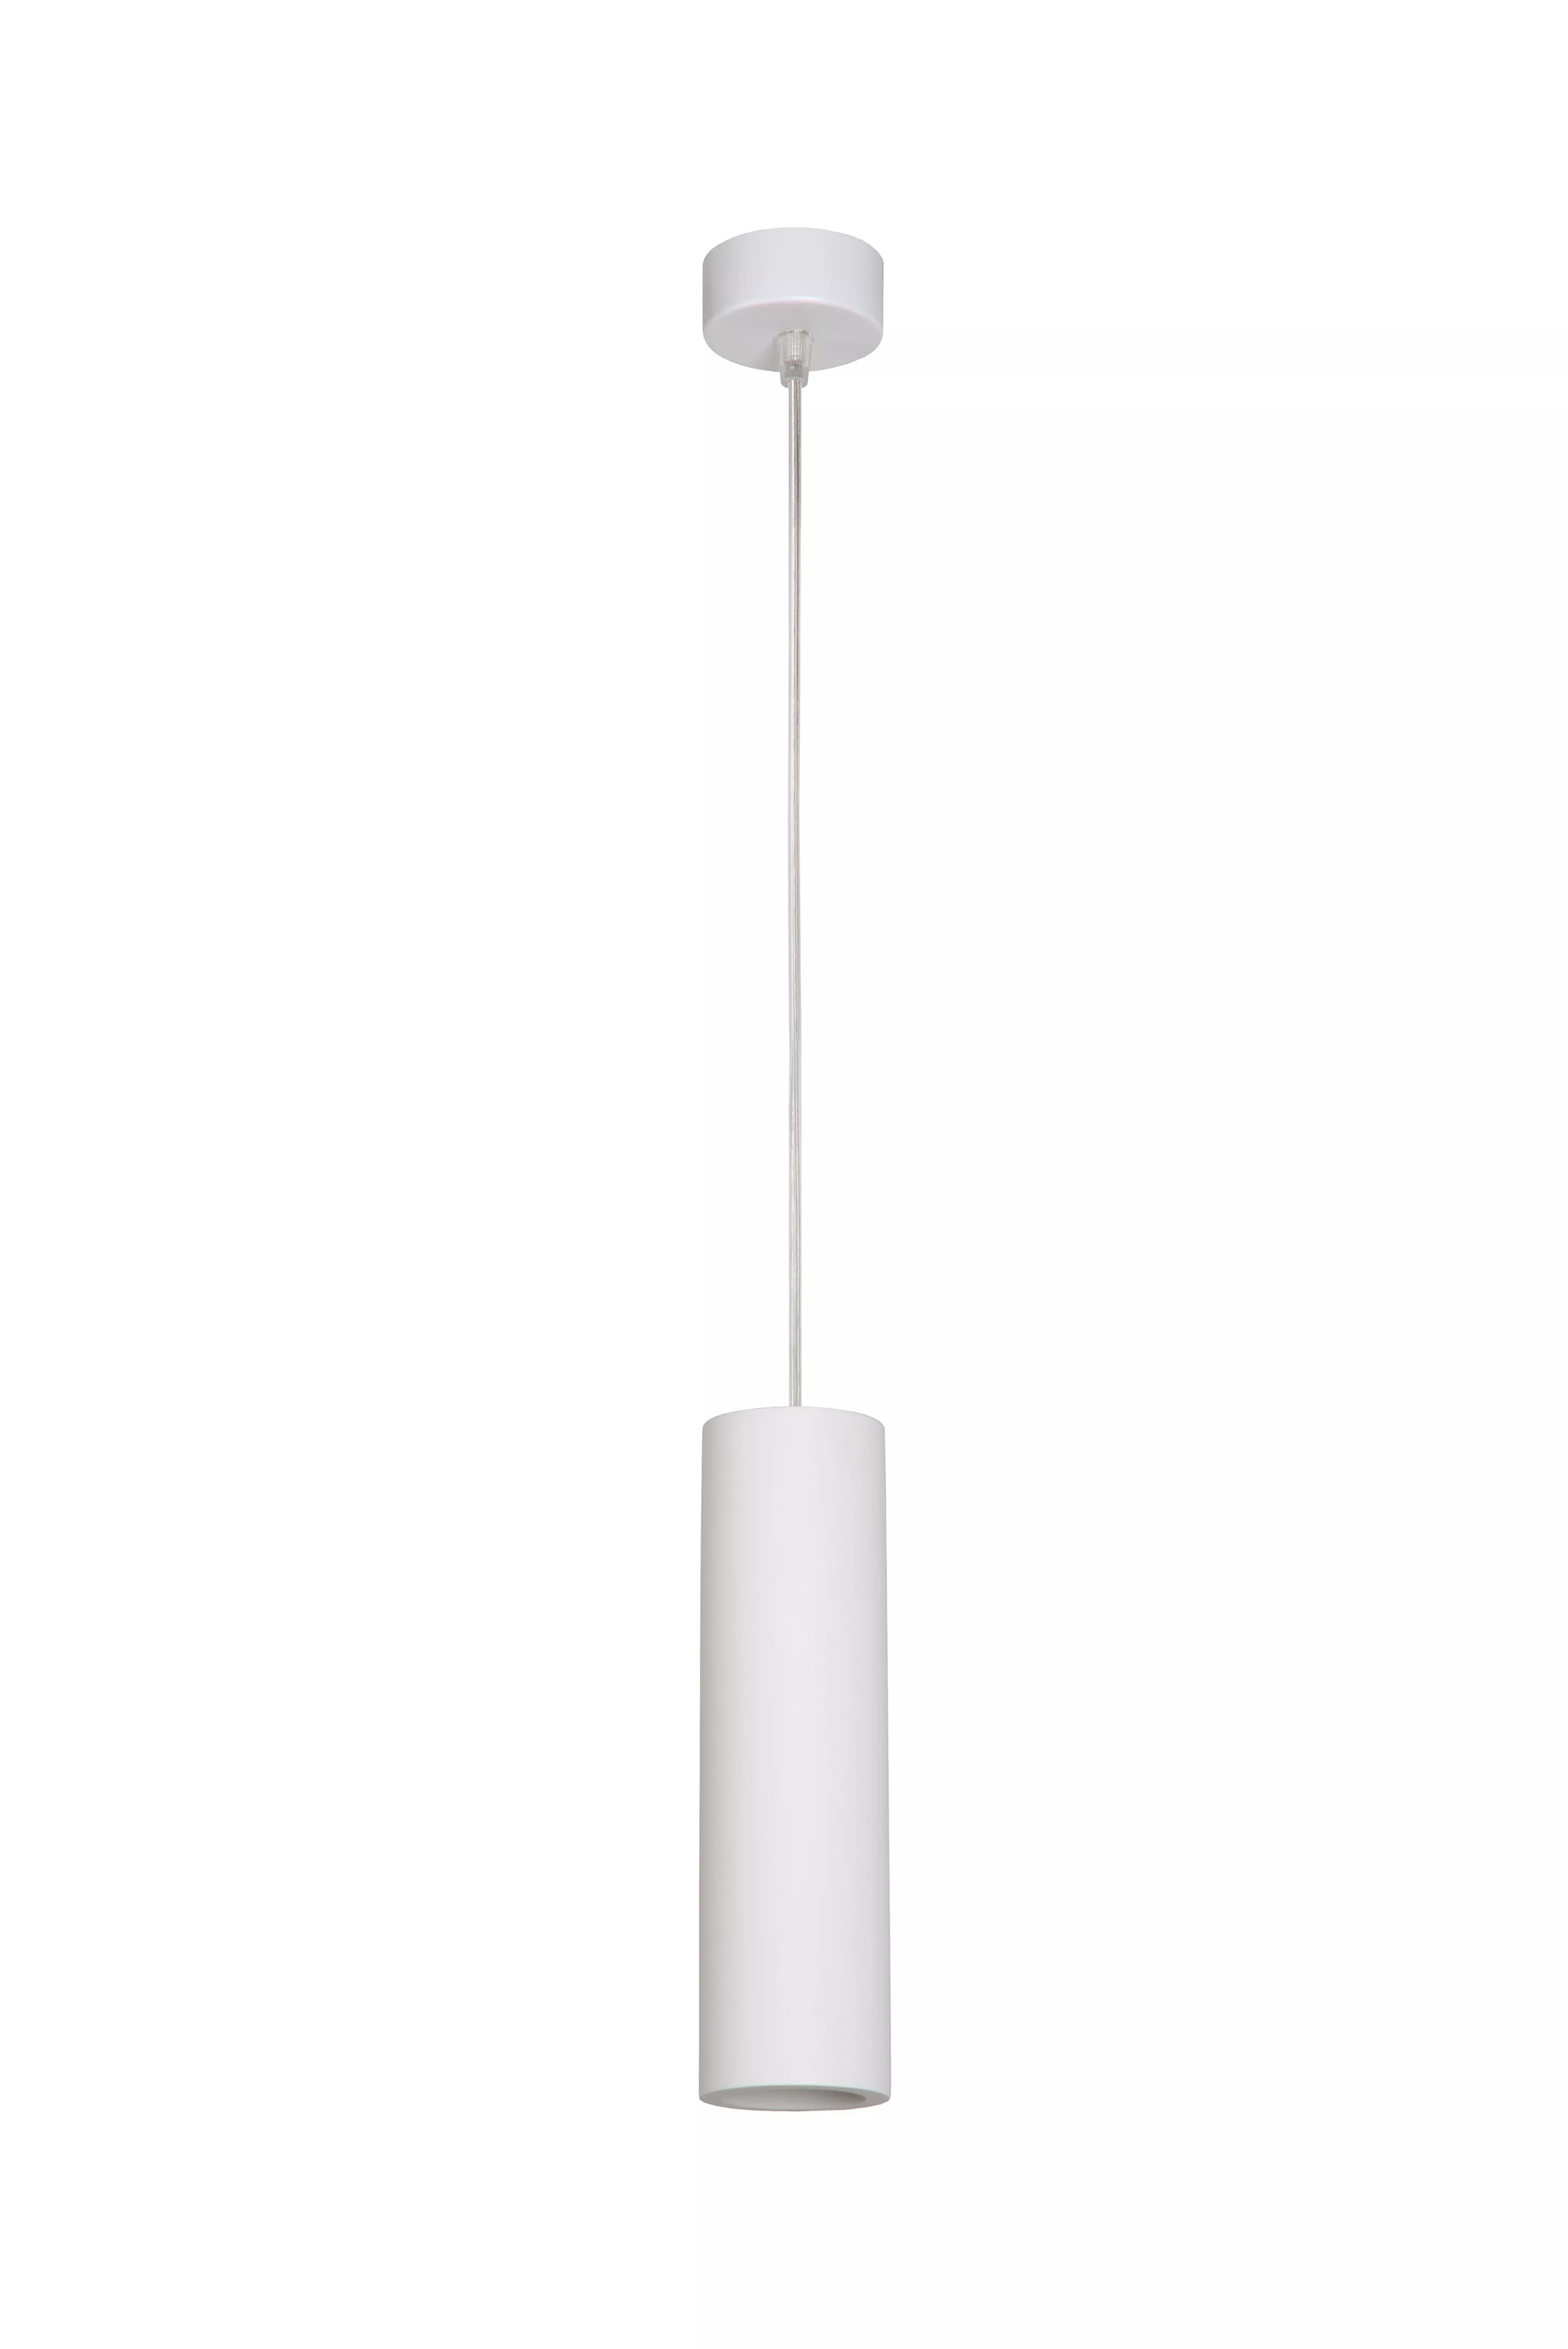 Jednoduché závěsné svítidlo Gipsy v bílé barvě a podlouhlém tvaru s nastavitelnou délkou kabelu. 